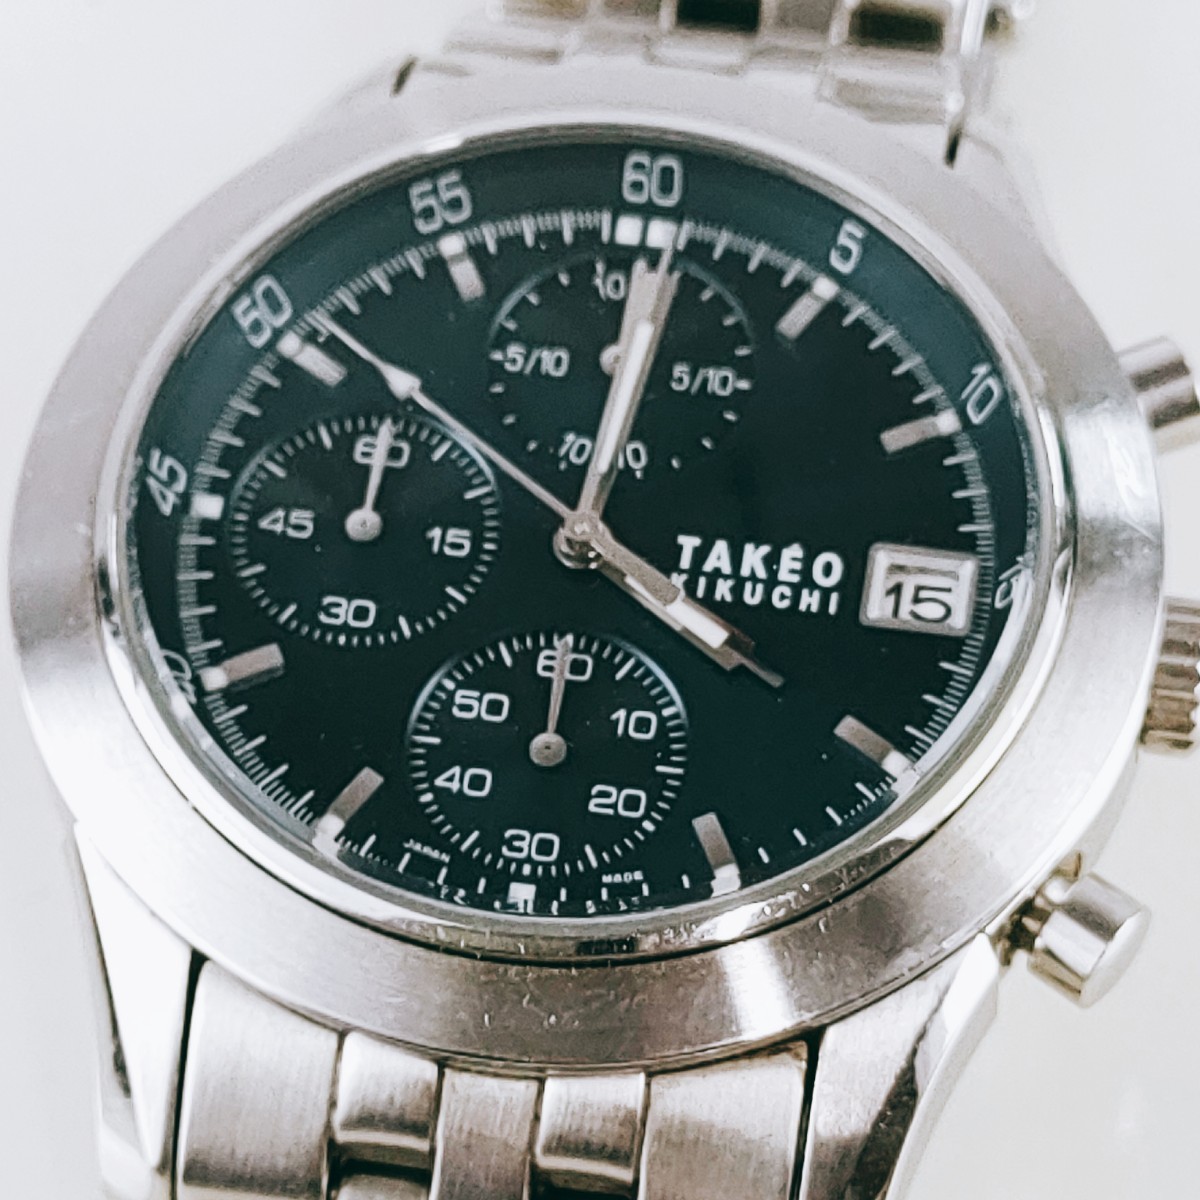 TAKEO KIKUCHI タケオキクチ 腕時計 アナログ シルバー基調 3針 青文字盤 アクセ アンティーク ヴィンテージ レトロ 時計 とけい トケイ_画像3